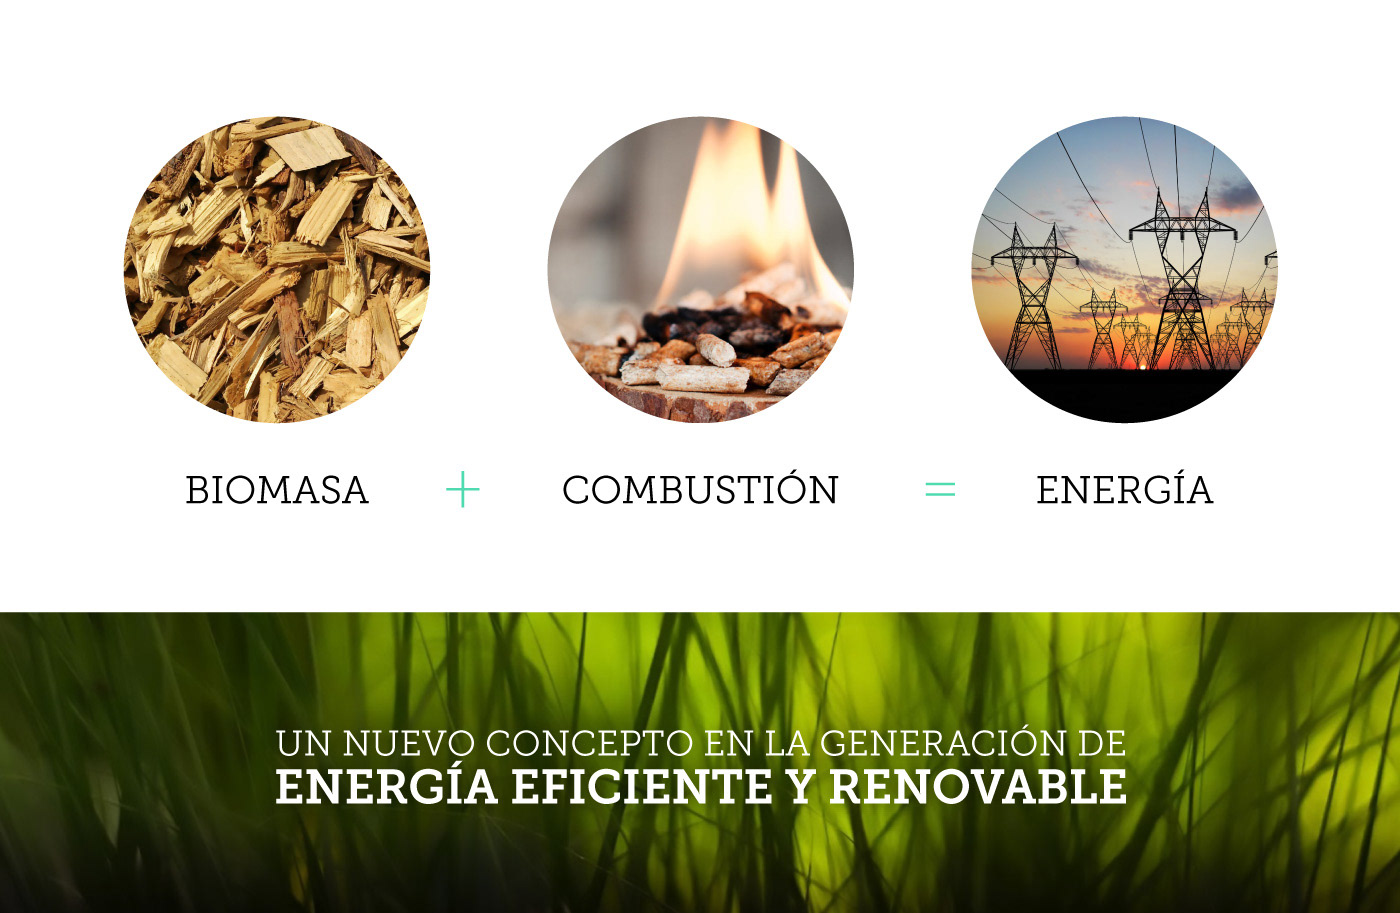 energia energy medio ambiente environment biomasa biomass